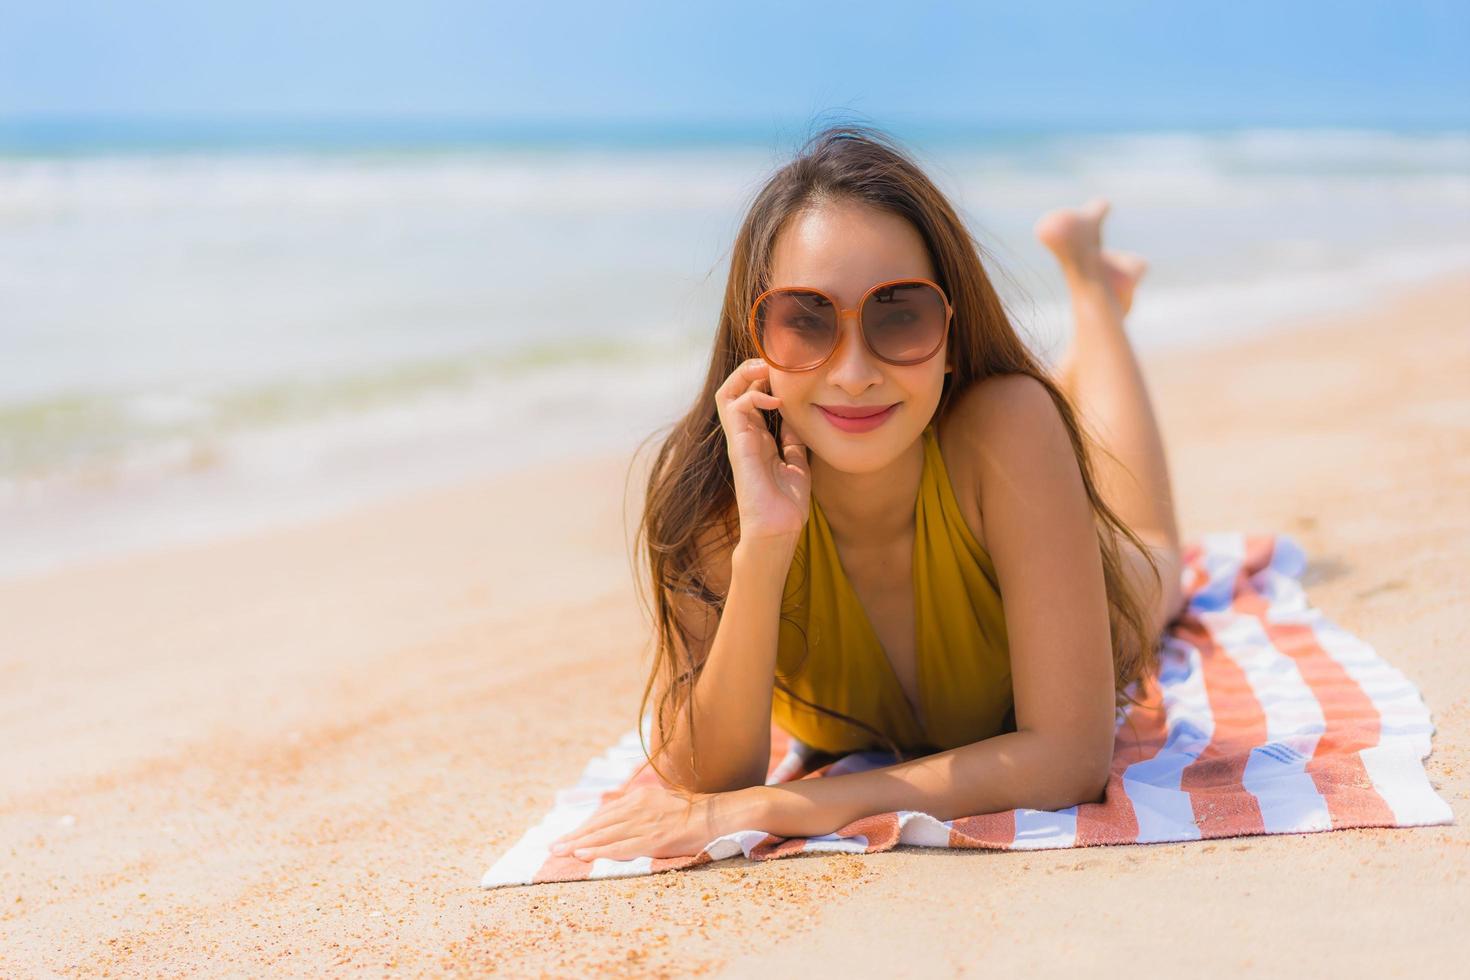 portrait belle jeune femme asiatique sourire heureux sur la plage et la mer photo